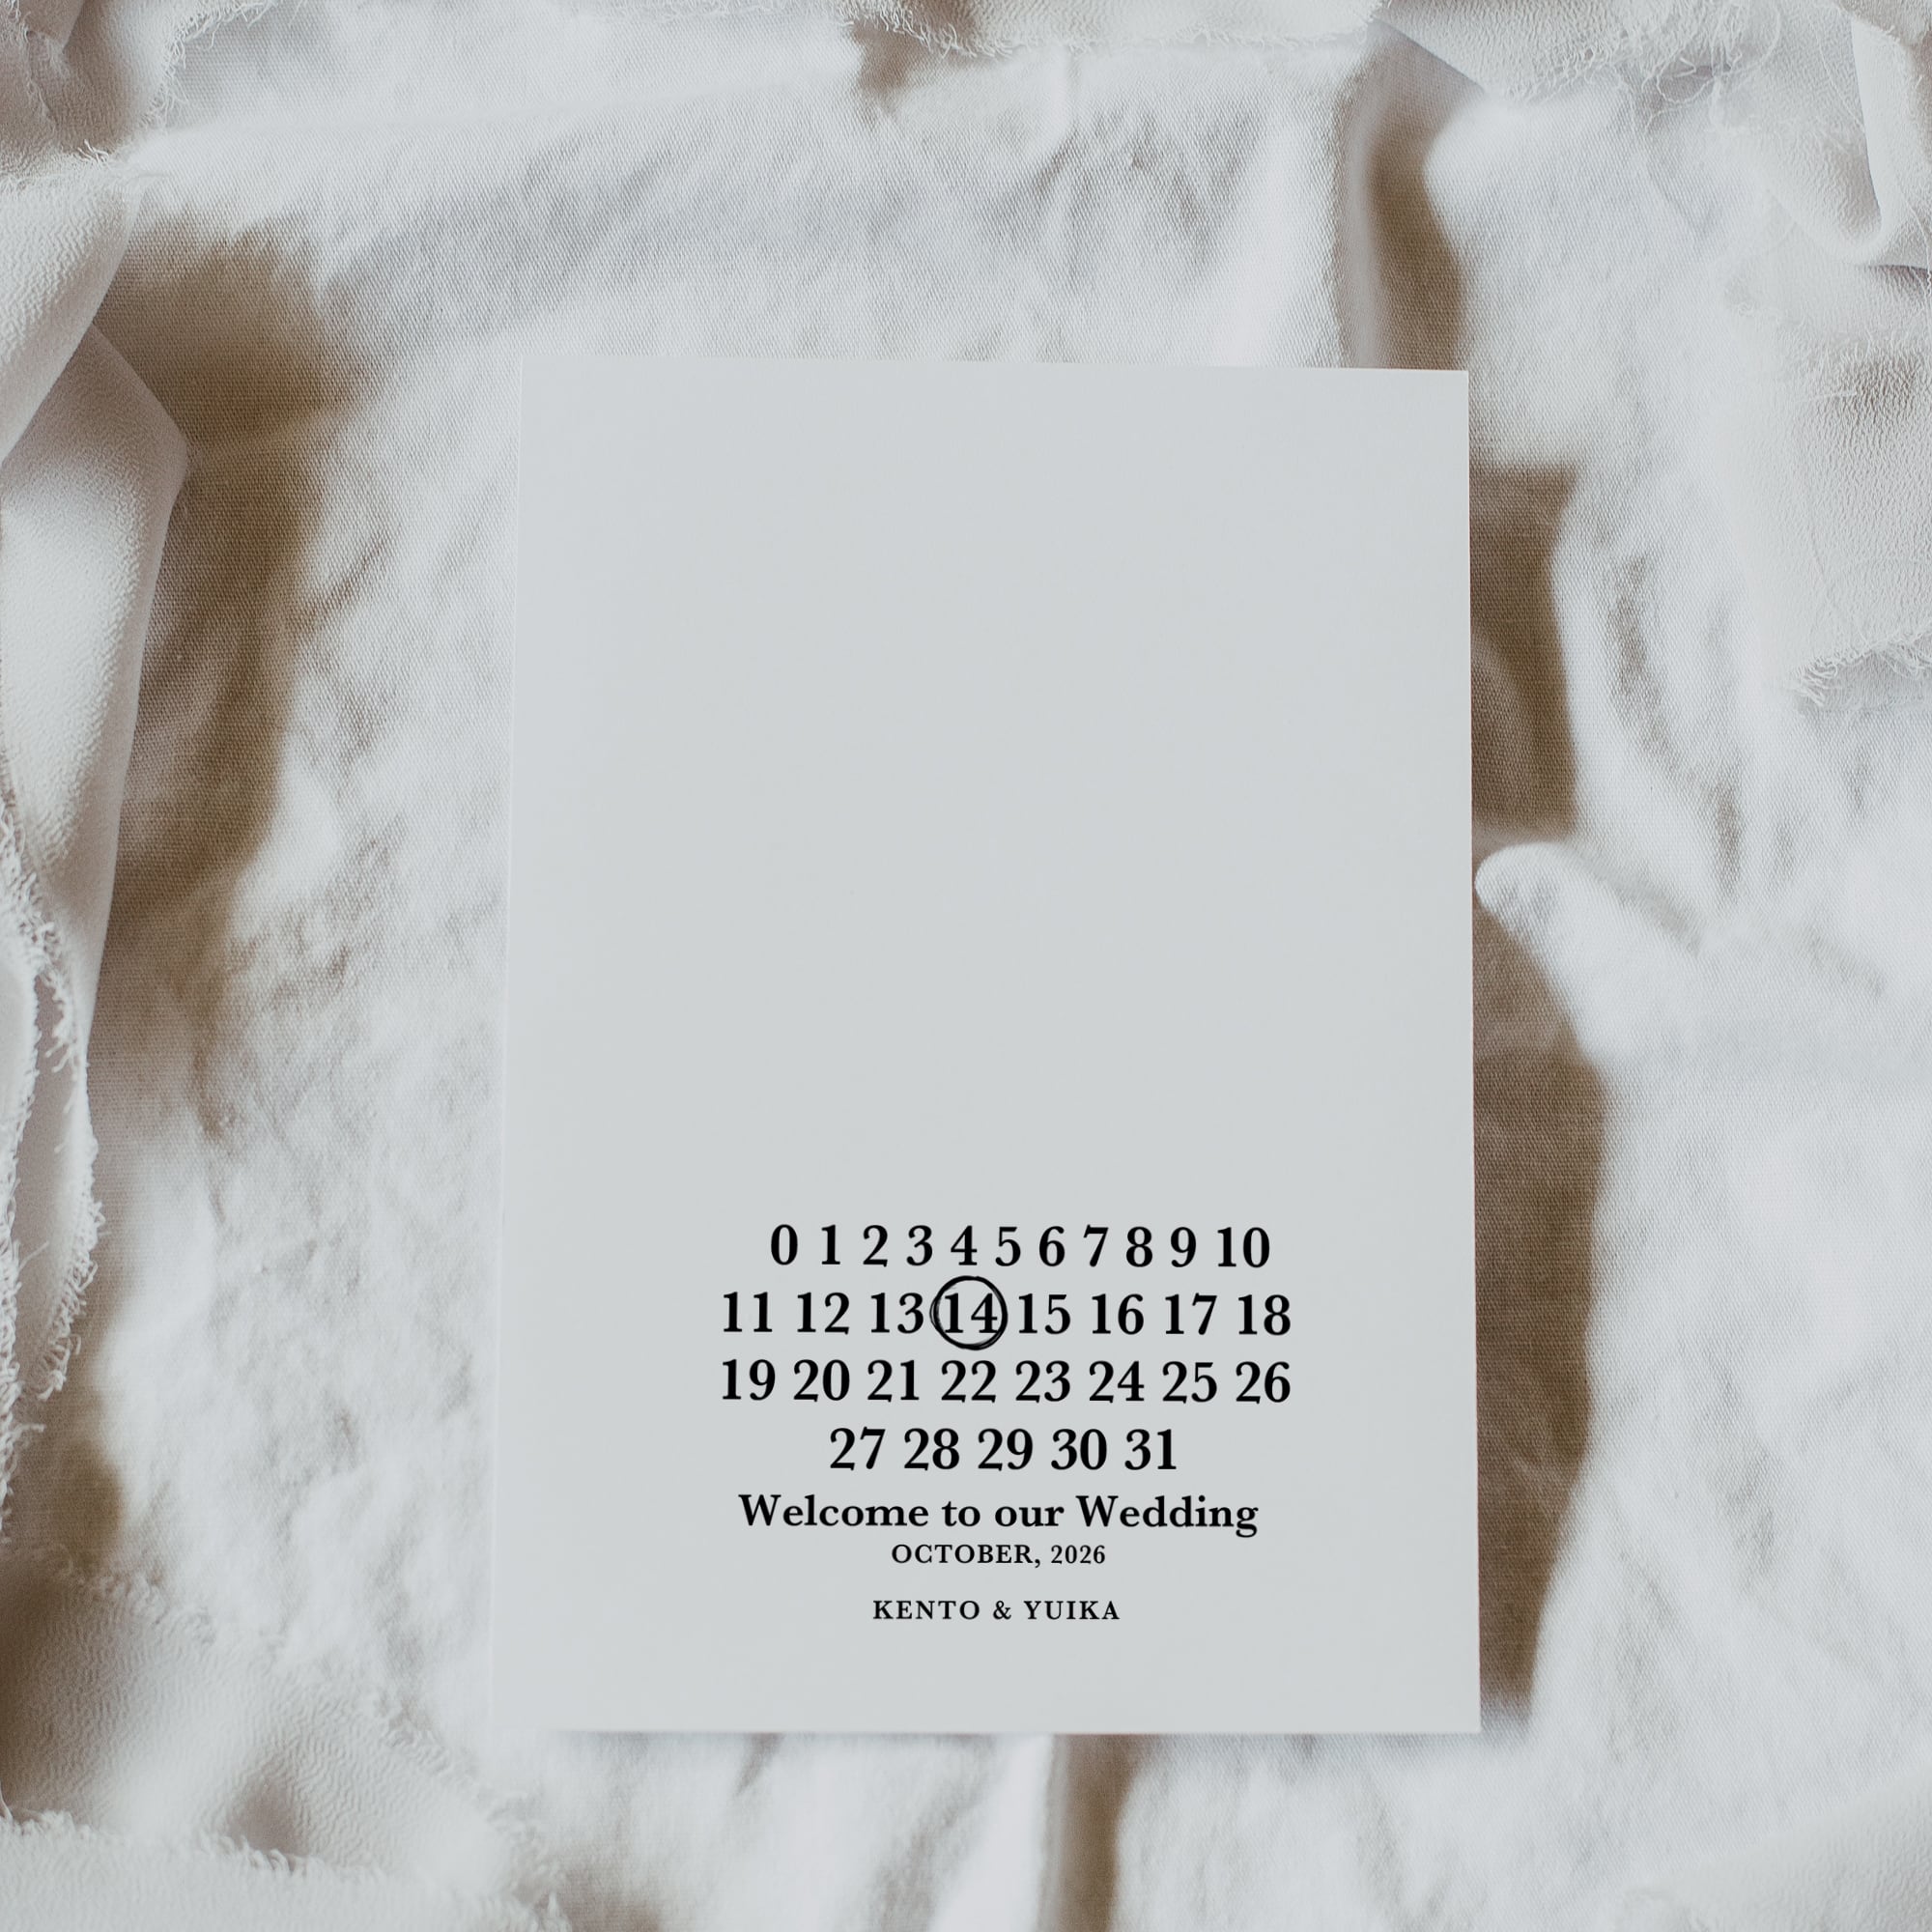 プロフィールブック159円/部【カレンダー】│二つ折り席次表 | DIY ...